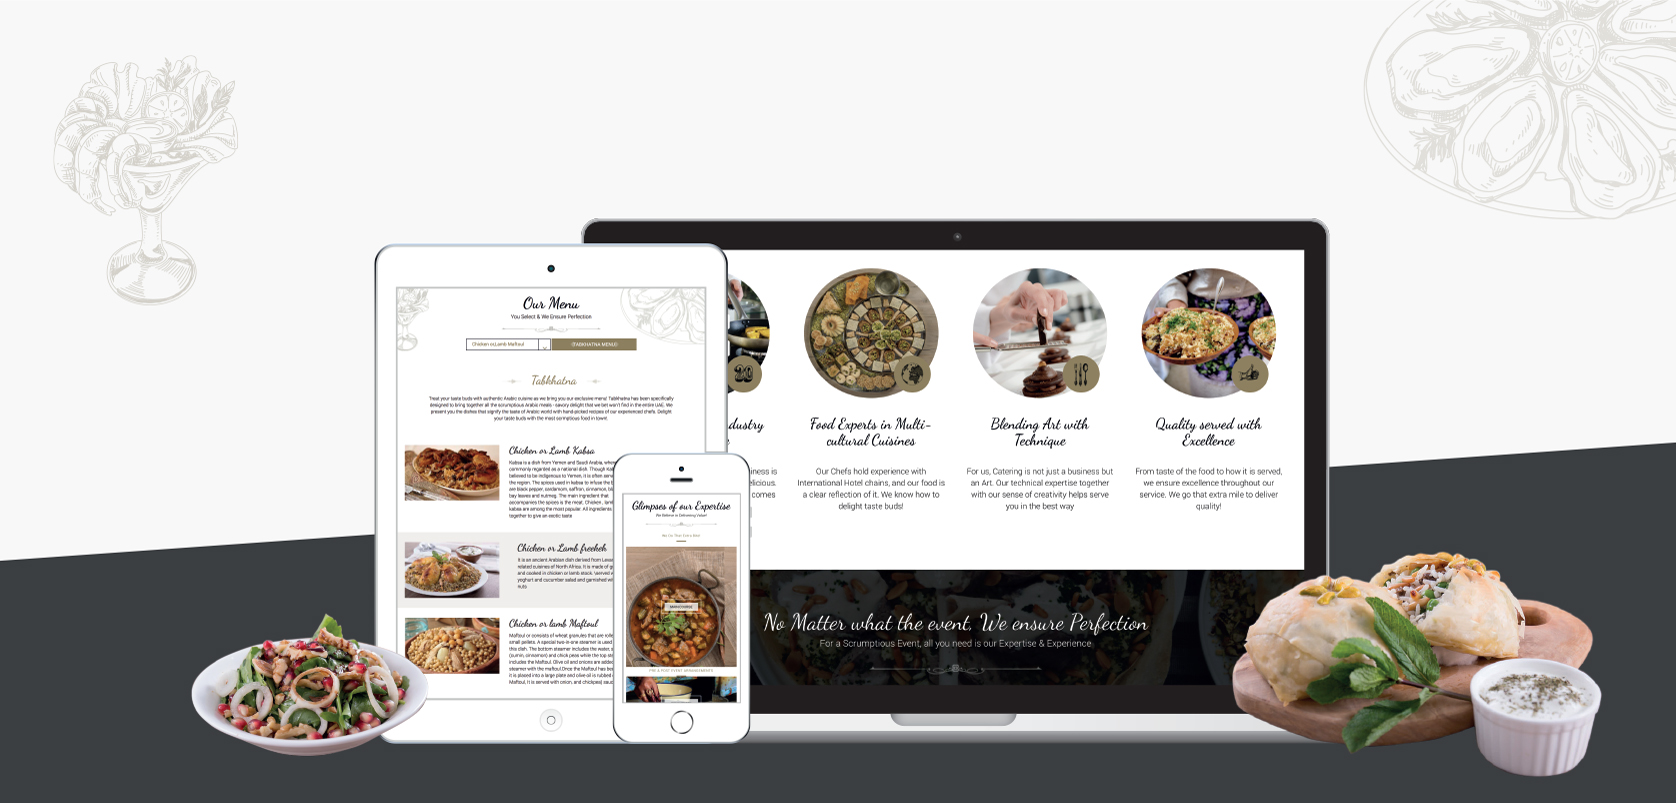 أماسيتموين الطعامتصميم مواقع إلكترونية